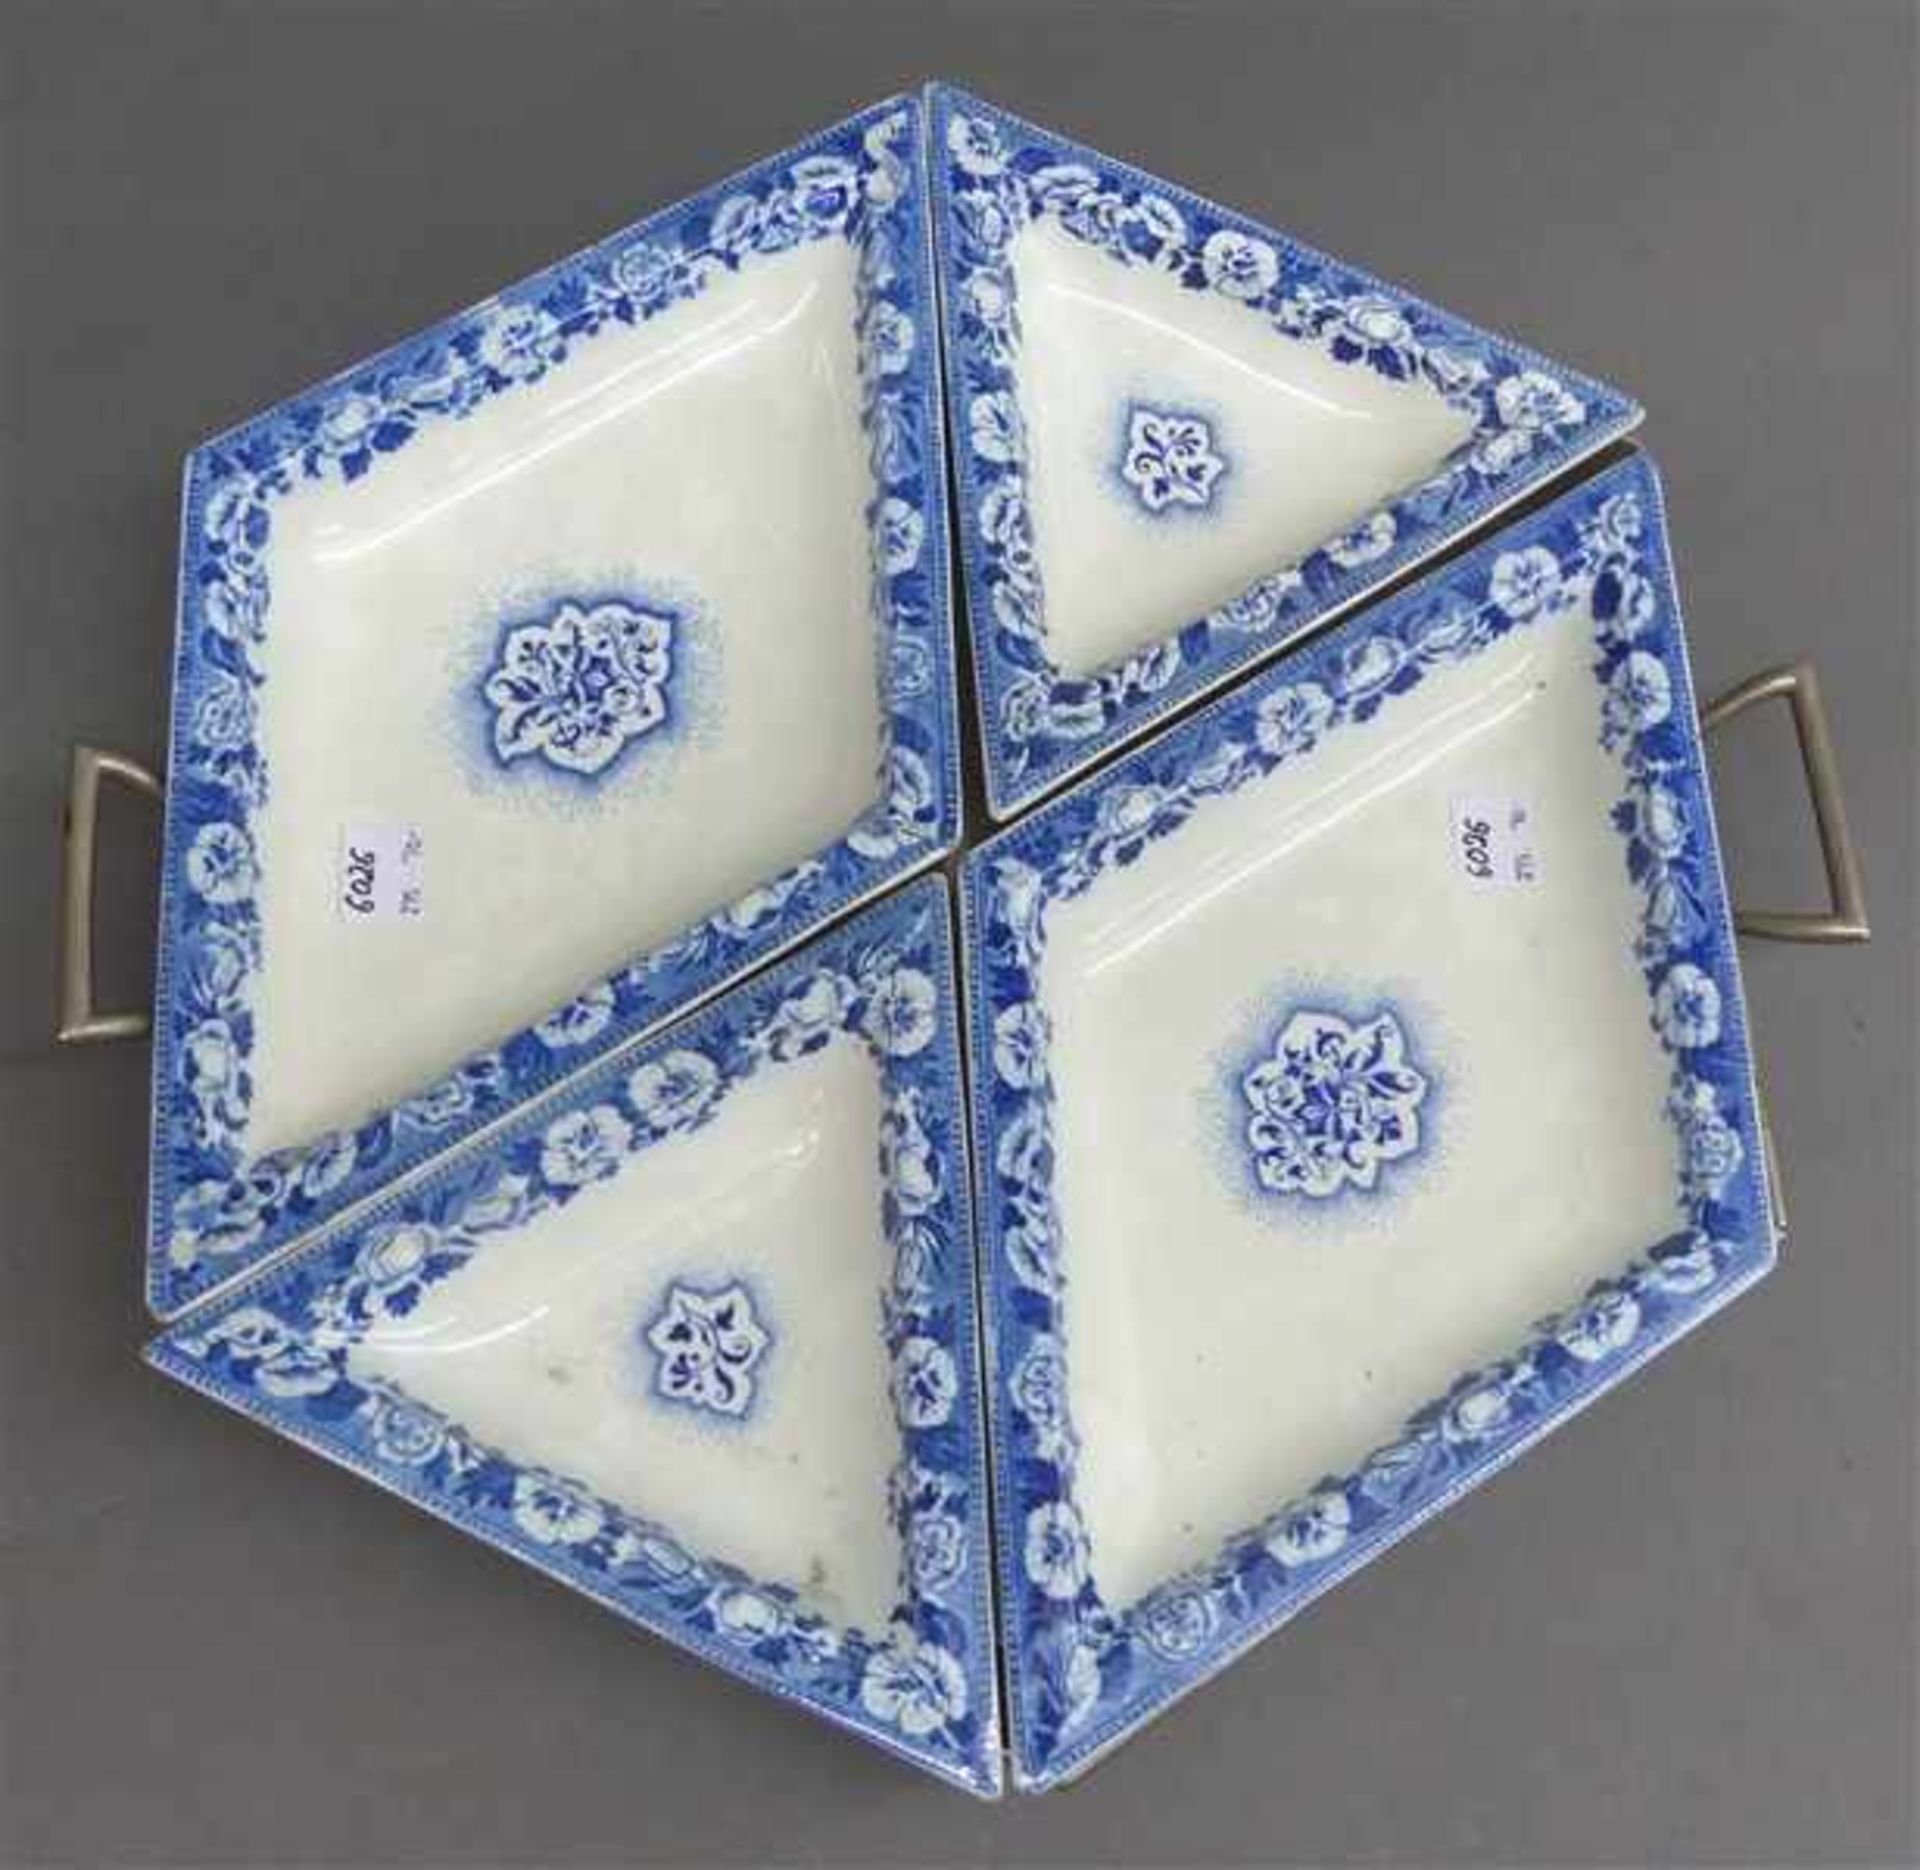 Anbietschale Metalltablett, 4 Keramikeinsätze, blaues florales Dekor, gemarkt "Zell", 6-eckig, d